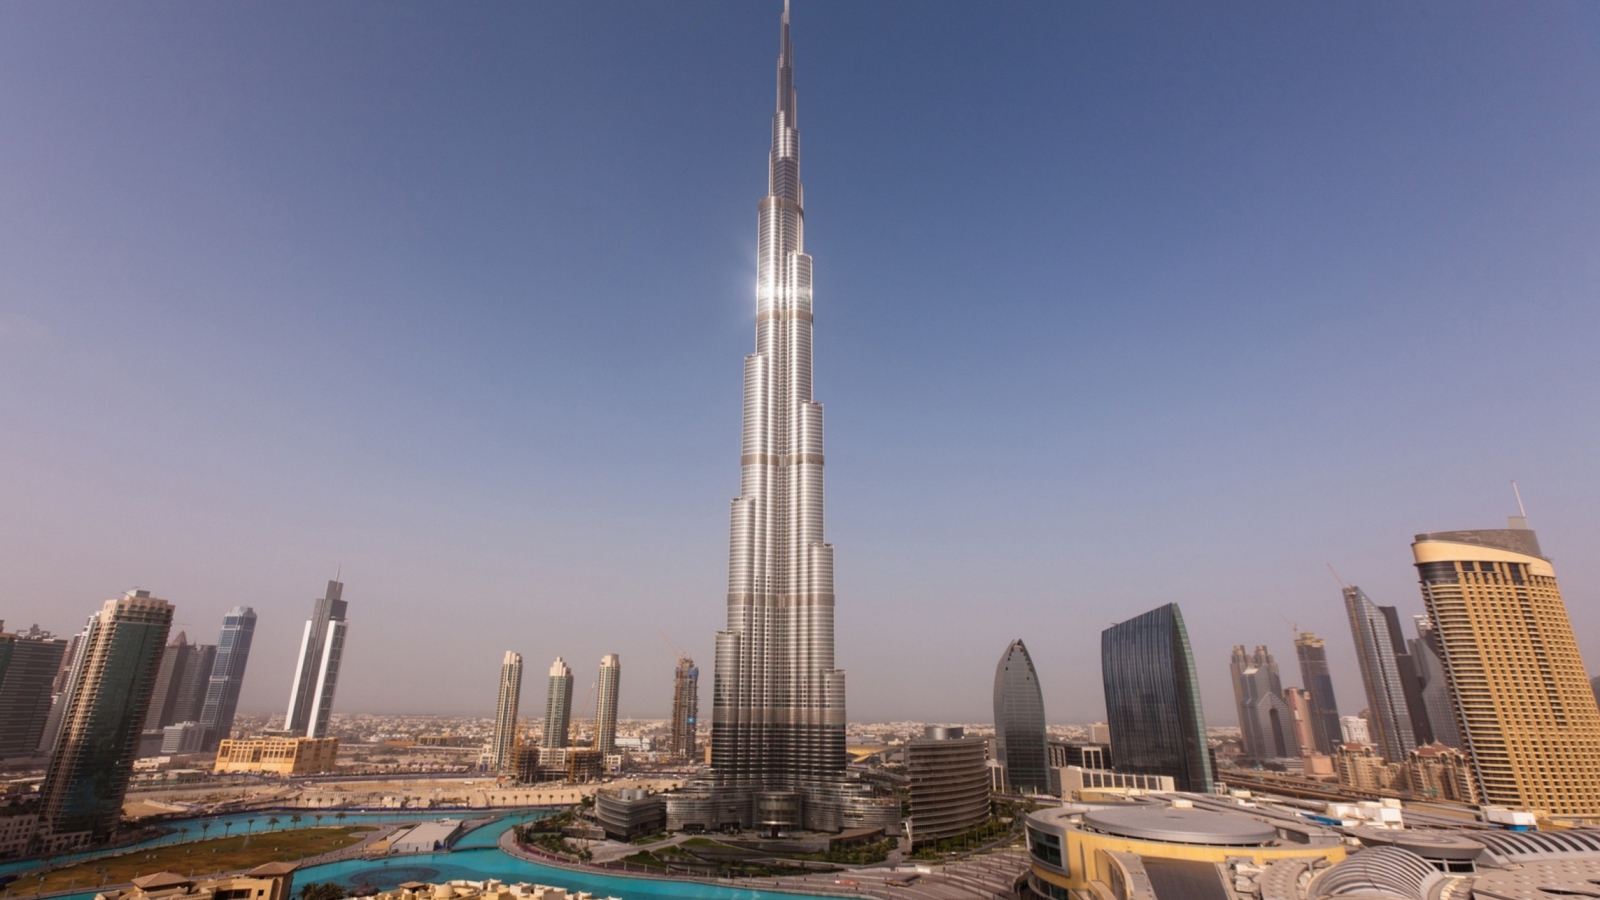 Обои Dubai - Burj Khalifa 1600x900